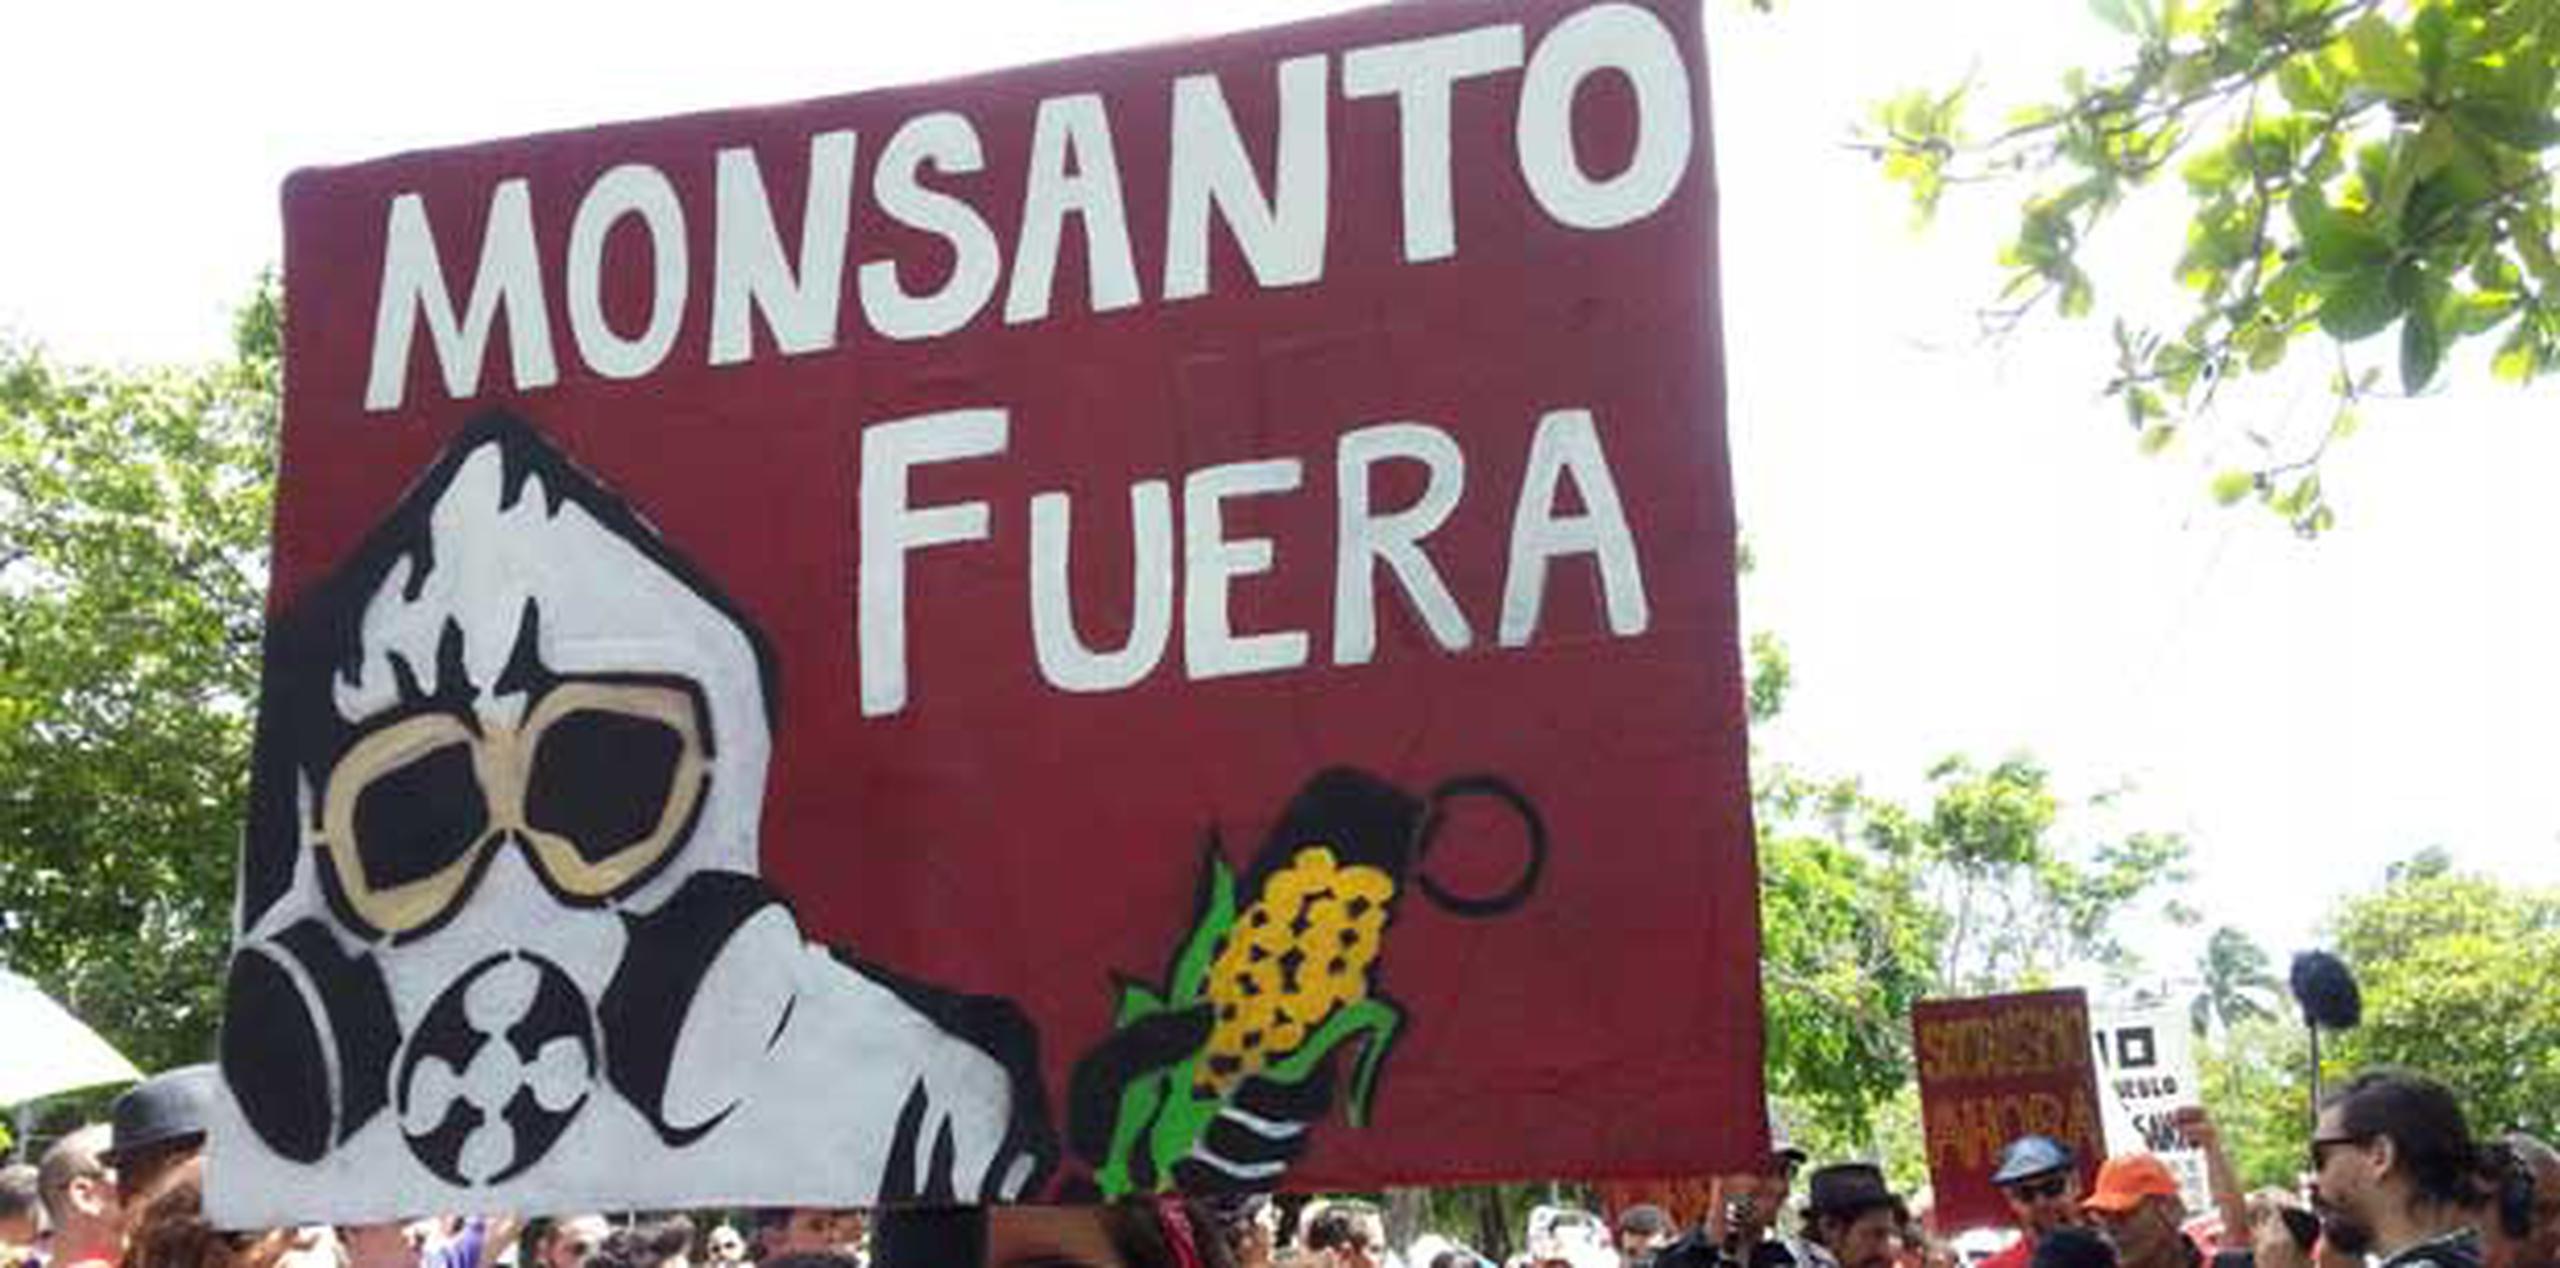 Monsanto ha sido señalado por grupos que aseguran que sus productos agrícolas son dañinos para la salud y que el químico glifosato, que utilizan en sus herbicidas, ha sido clasificado por la Agencia Internacional para la Investigación del Cáncer como “probablemente cancerígeno”. (Archivo)